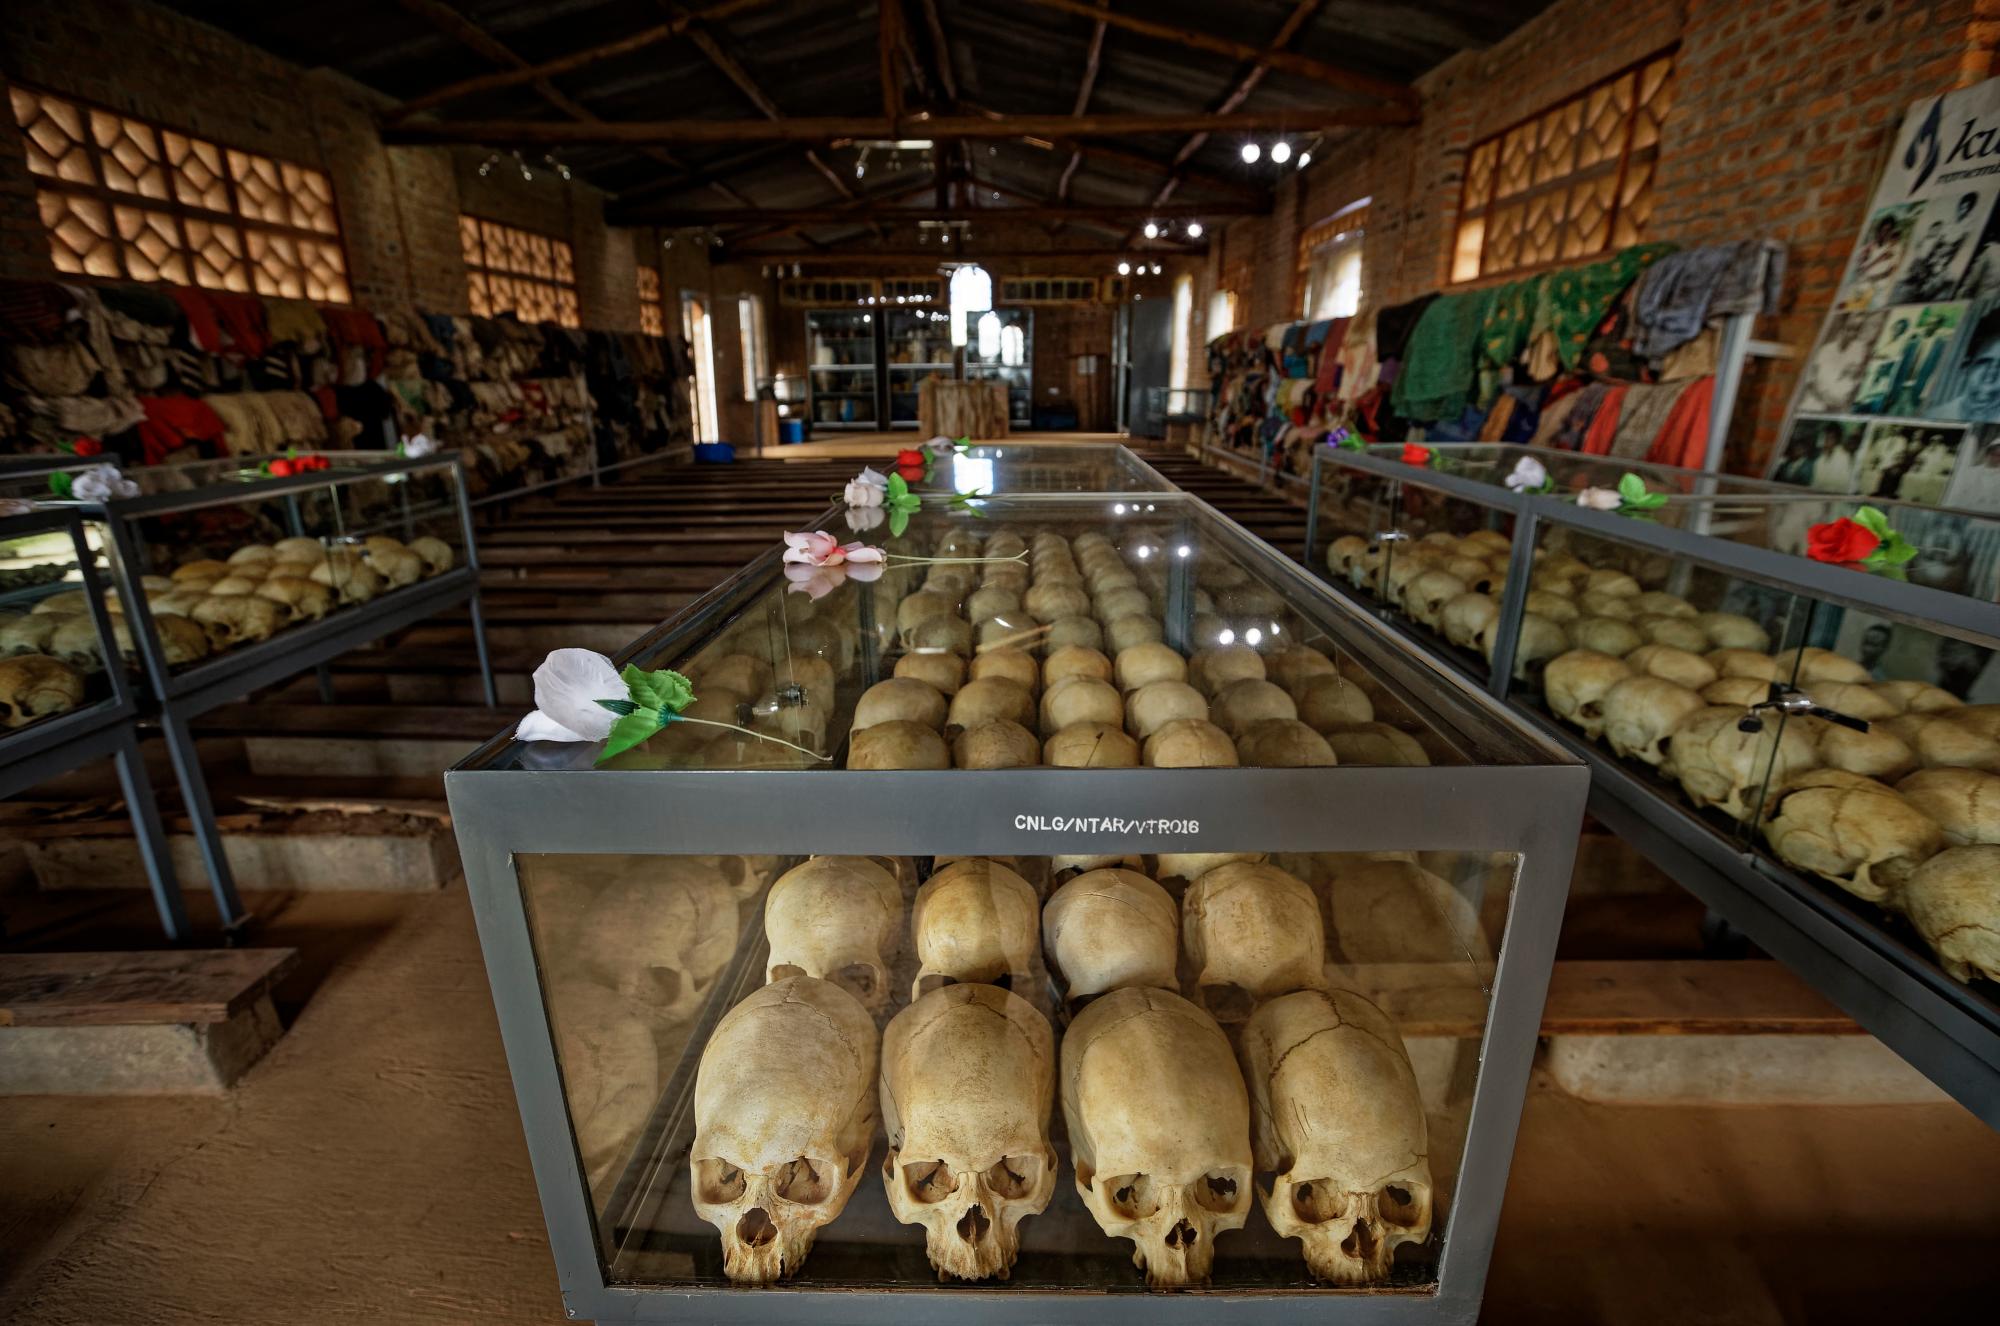 Cráneos en cajas de vidrio son guardado dentro de la iglesia en Ntarama, Ruanda, como un monumento a los miles que murieron en la iglesia católica y alrededor de él durante el genocidio de 1994.